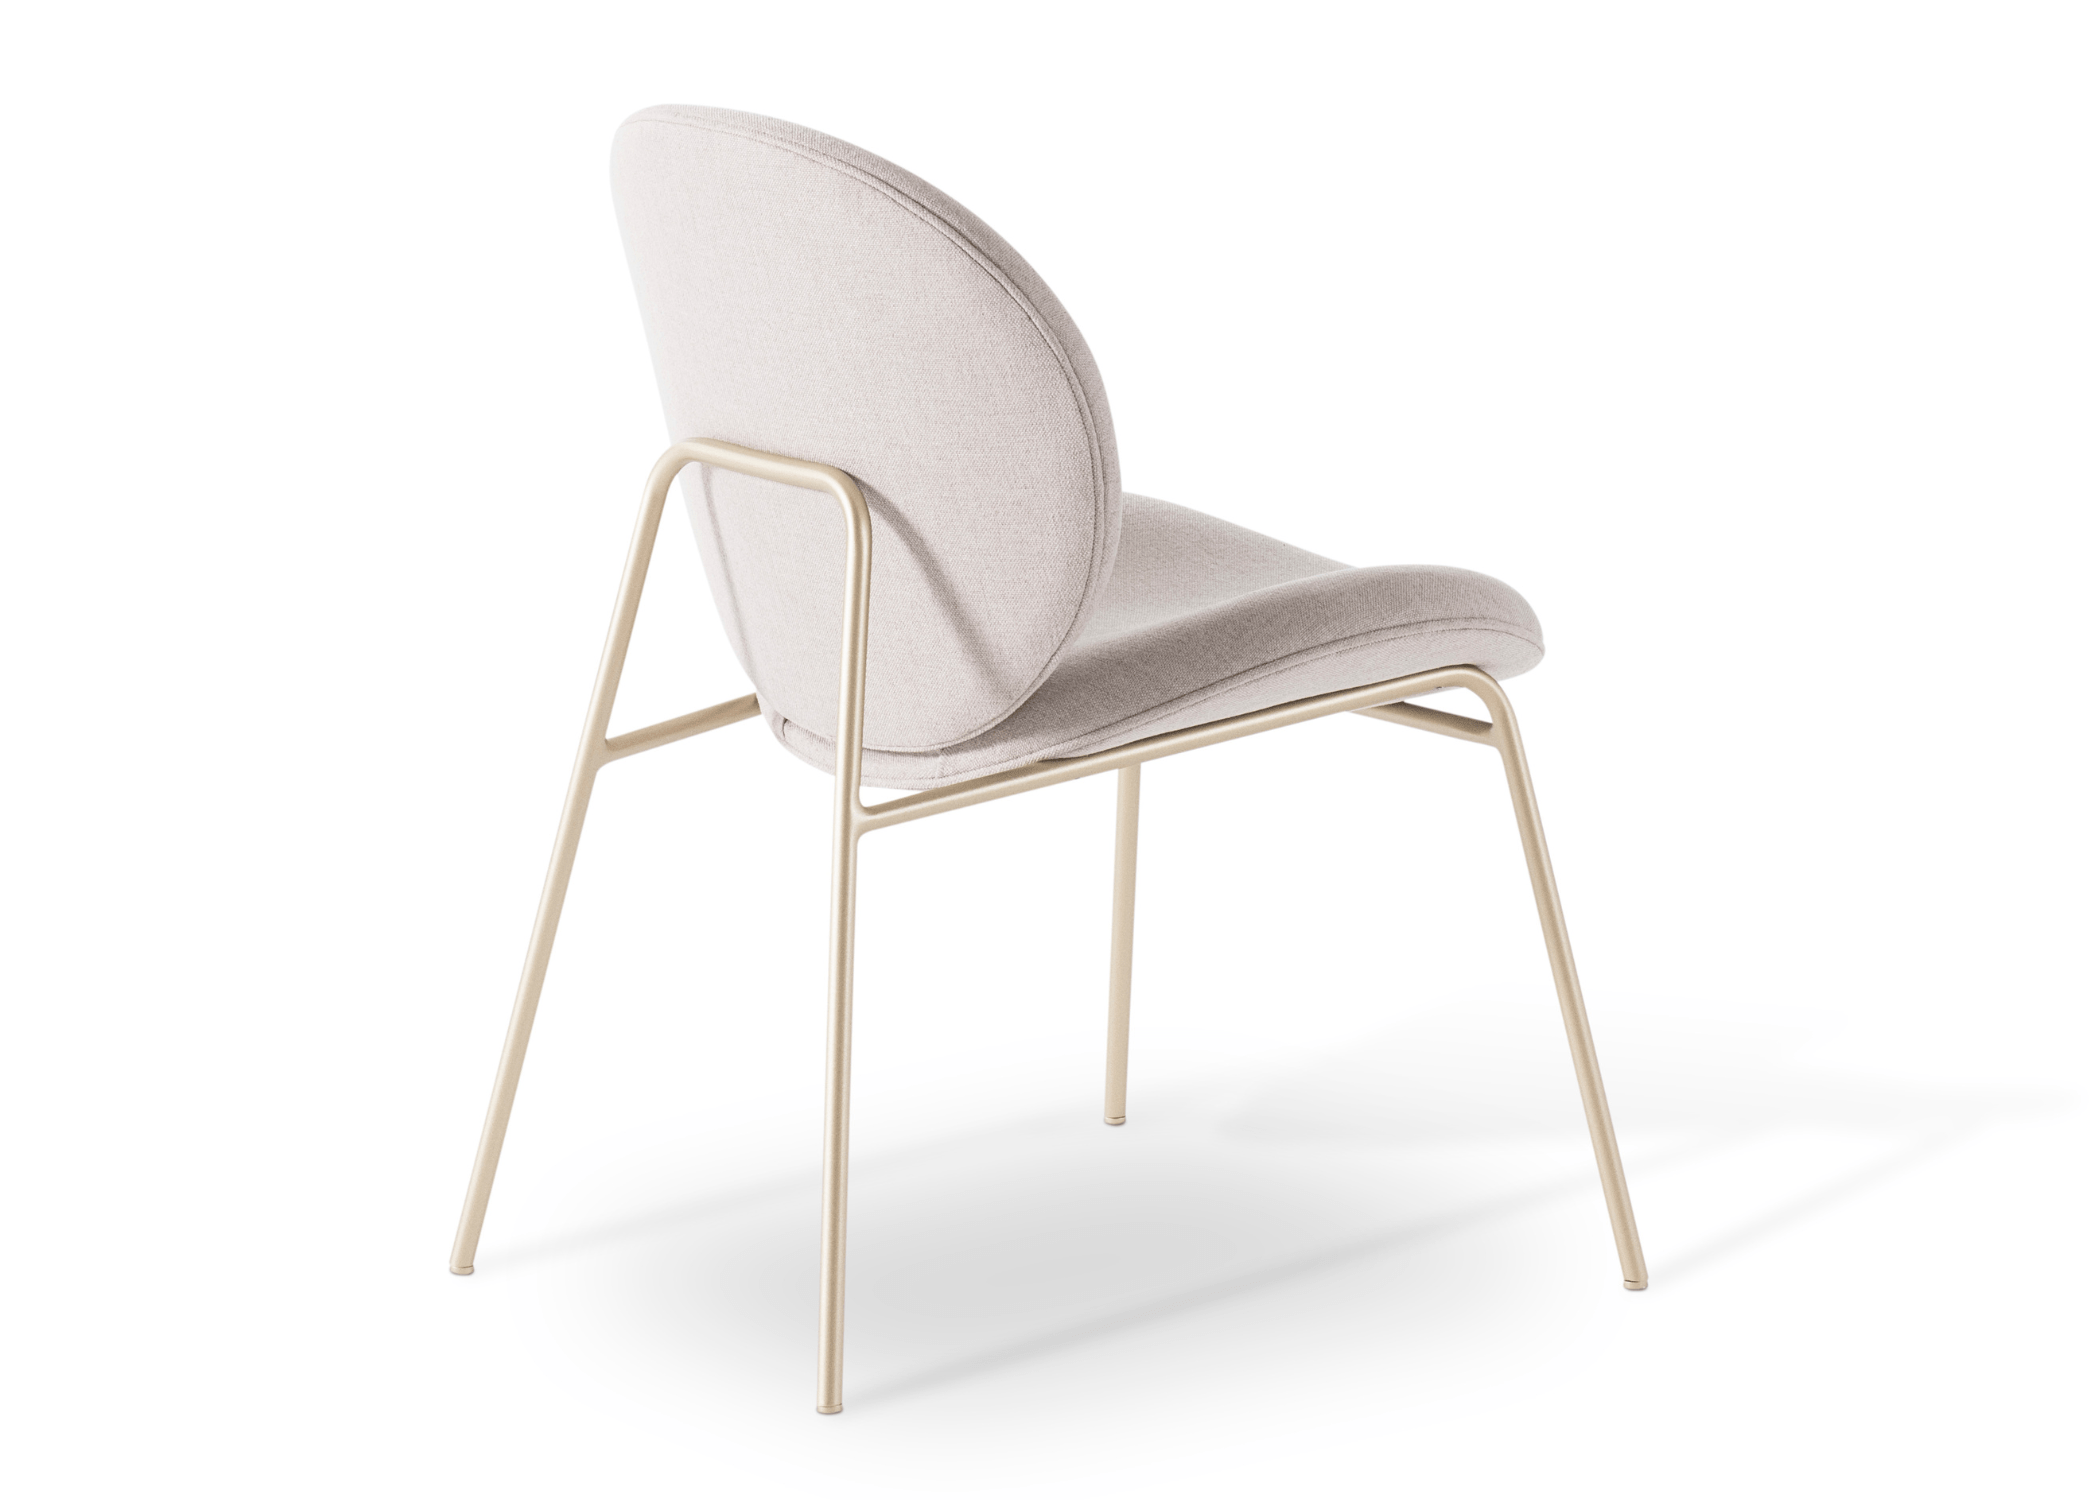 Cadeira Chloe - a combinação perfeita de elegância e funcionalidade.